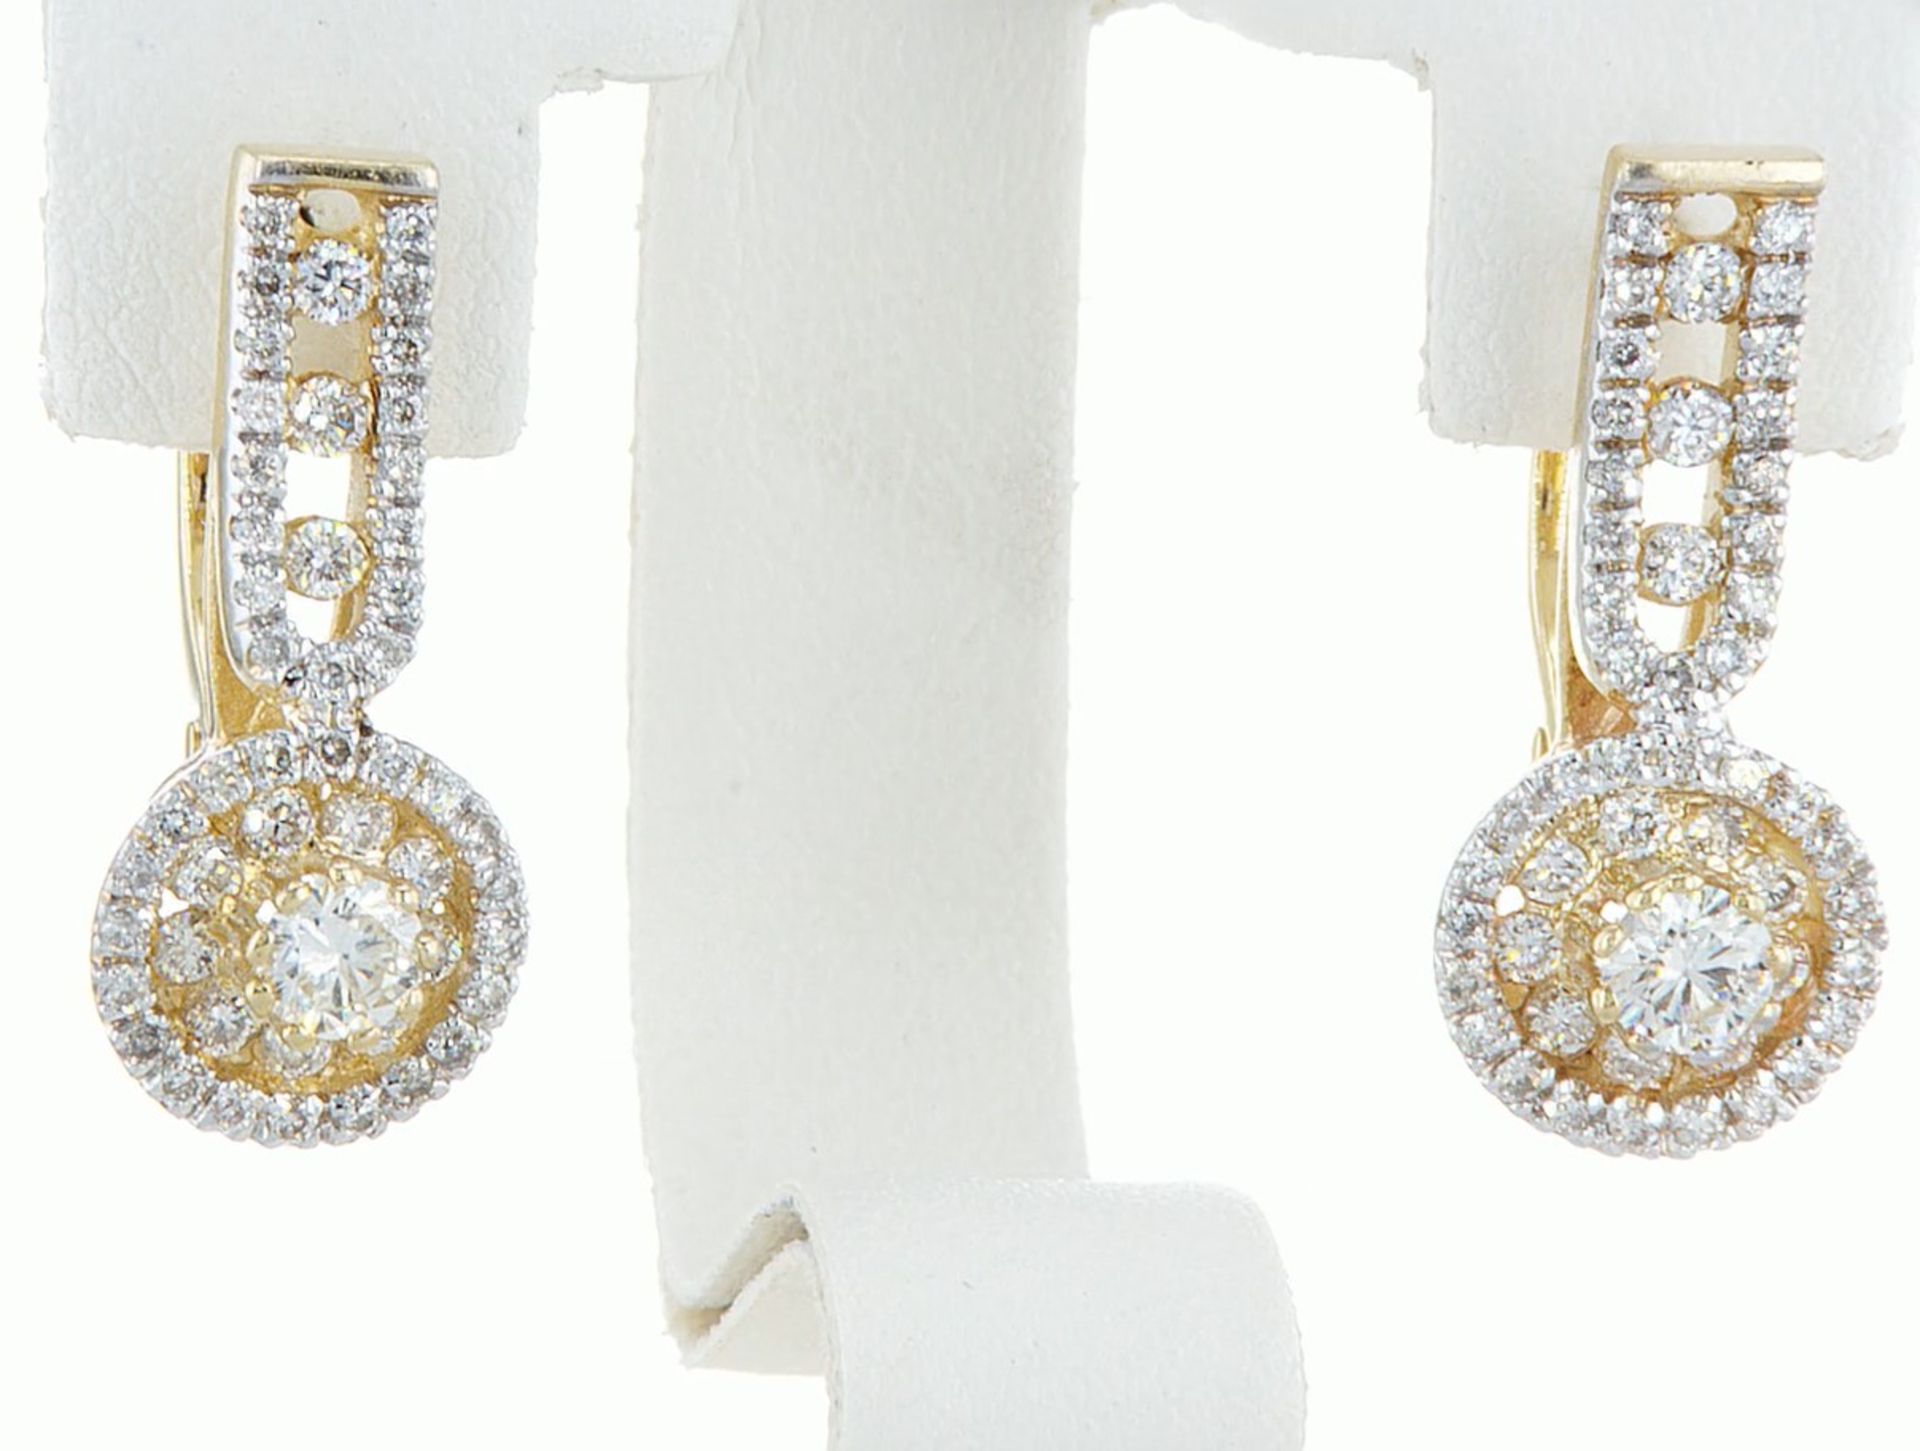 14 kt. White gold - Earrings - 1.46 ct Diamond - Diamonds